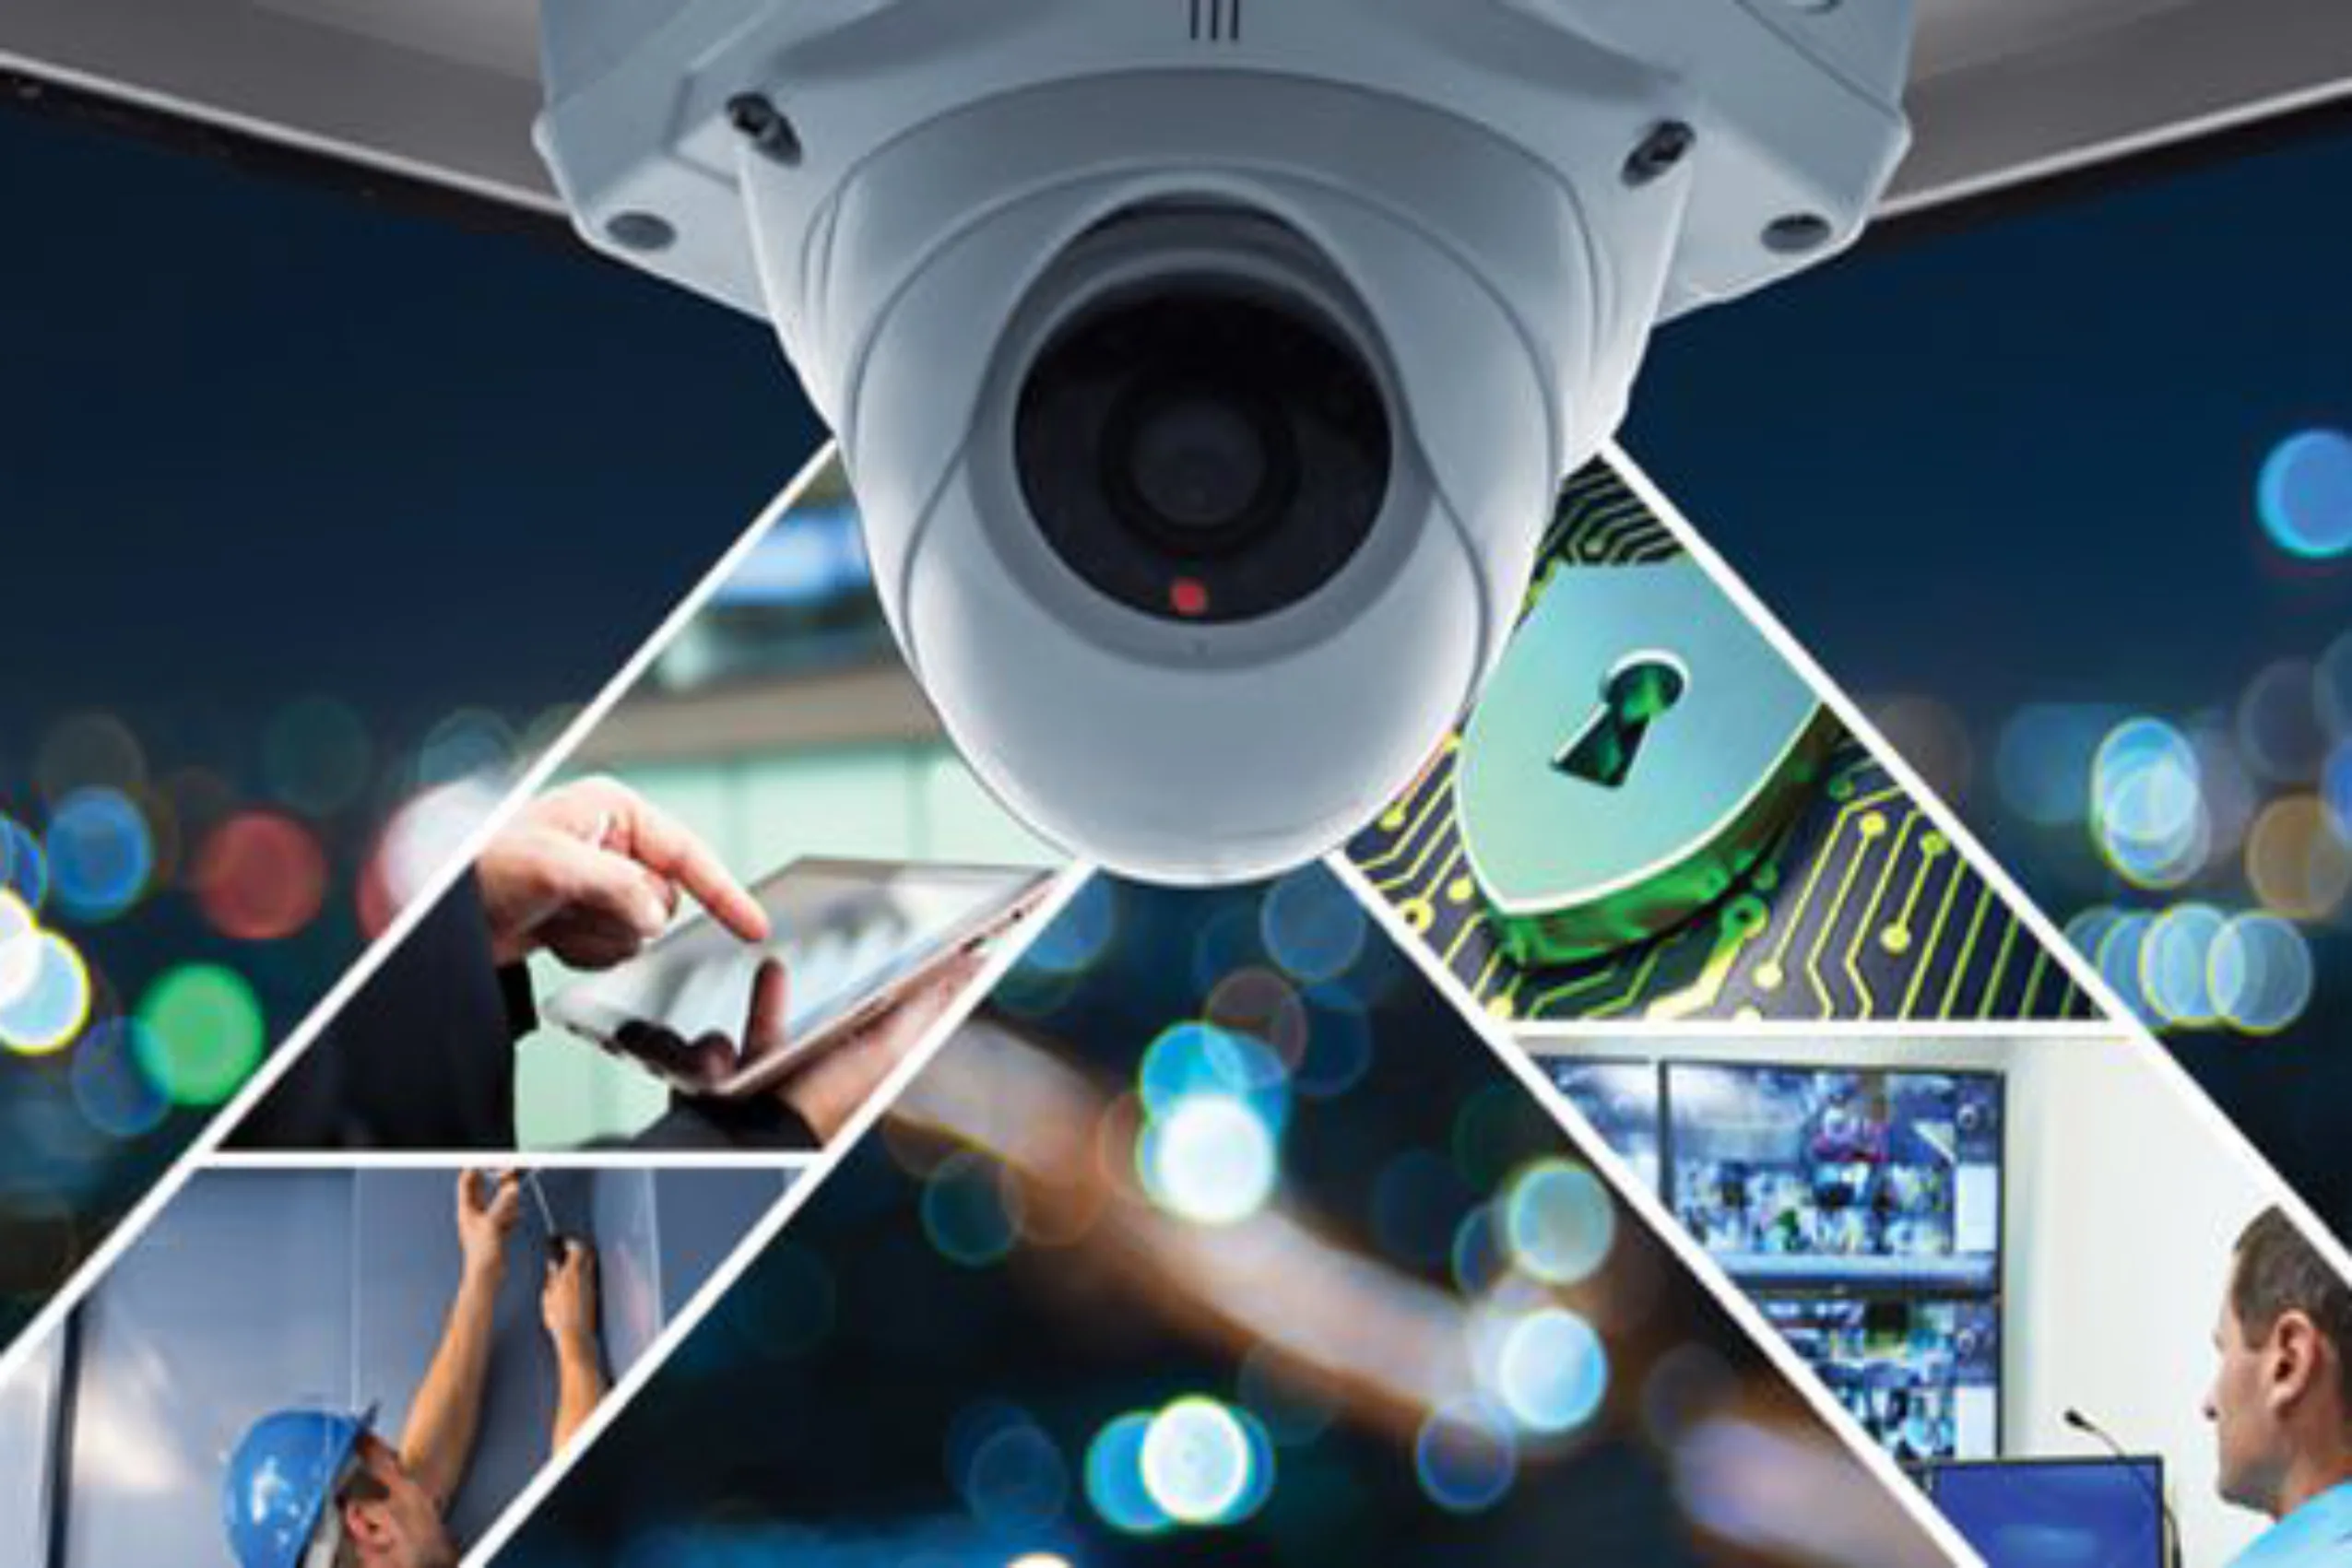 Cámaras de seguridad - Cámaras de Video vigilancia - Sistema CCTV